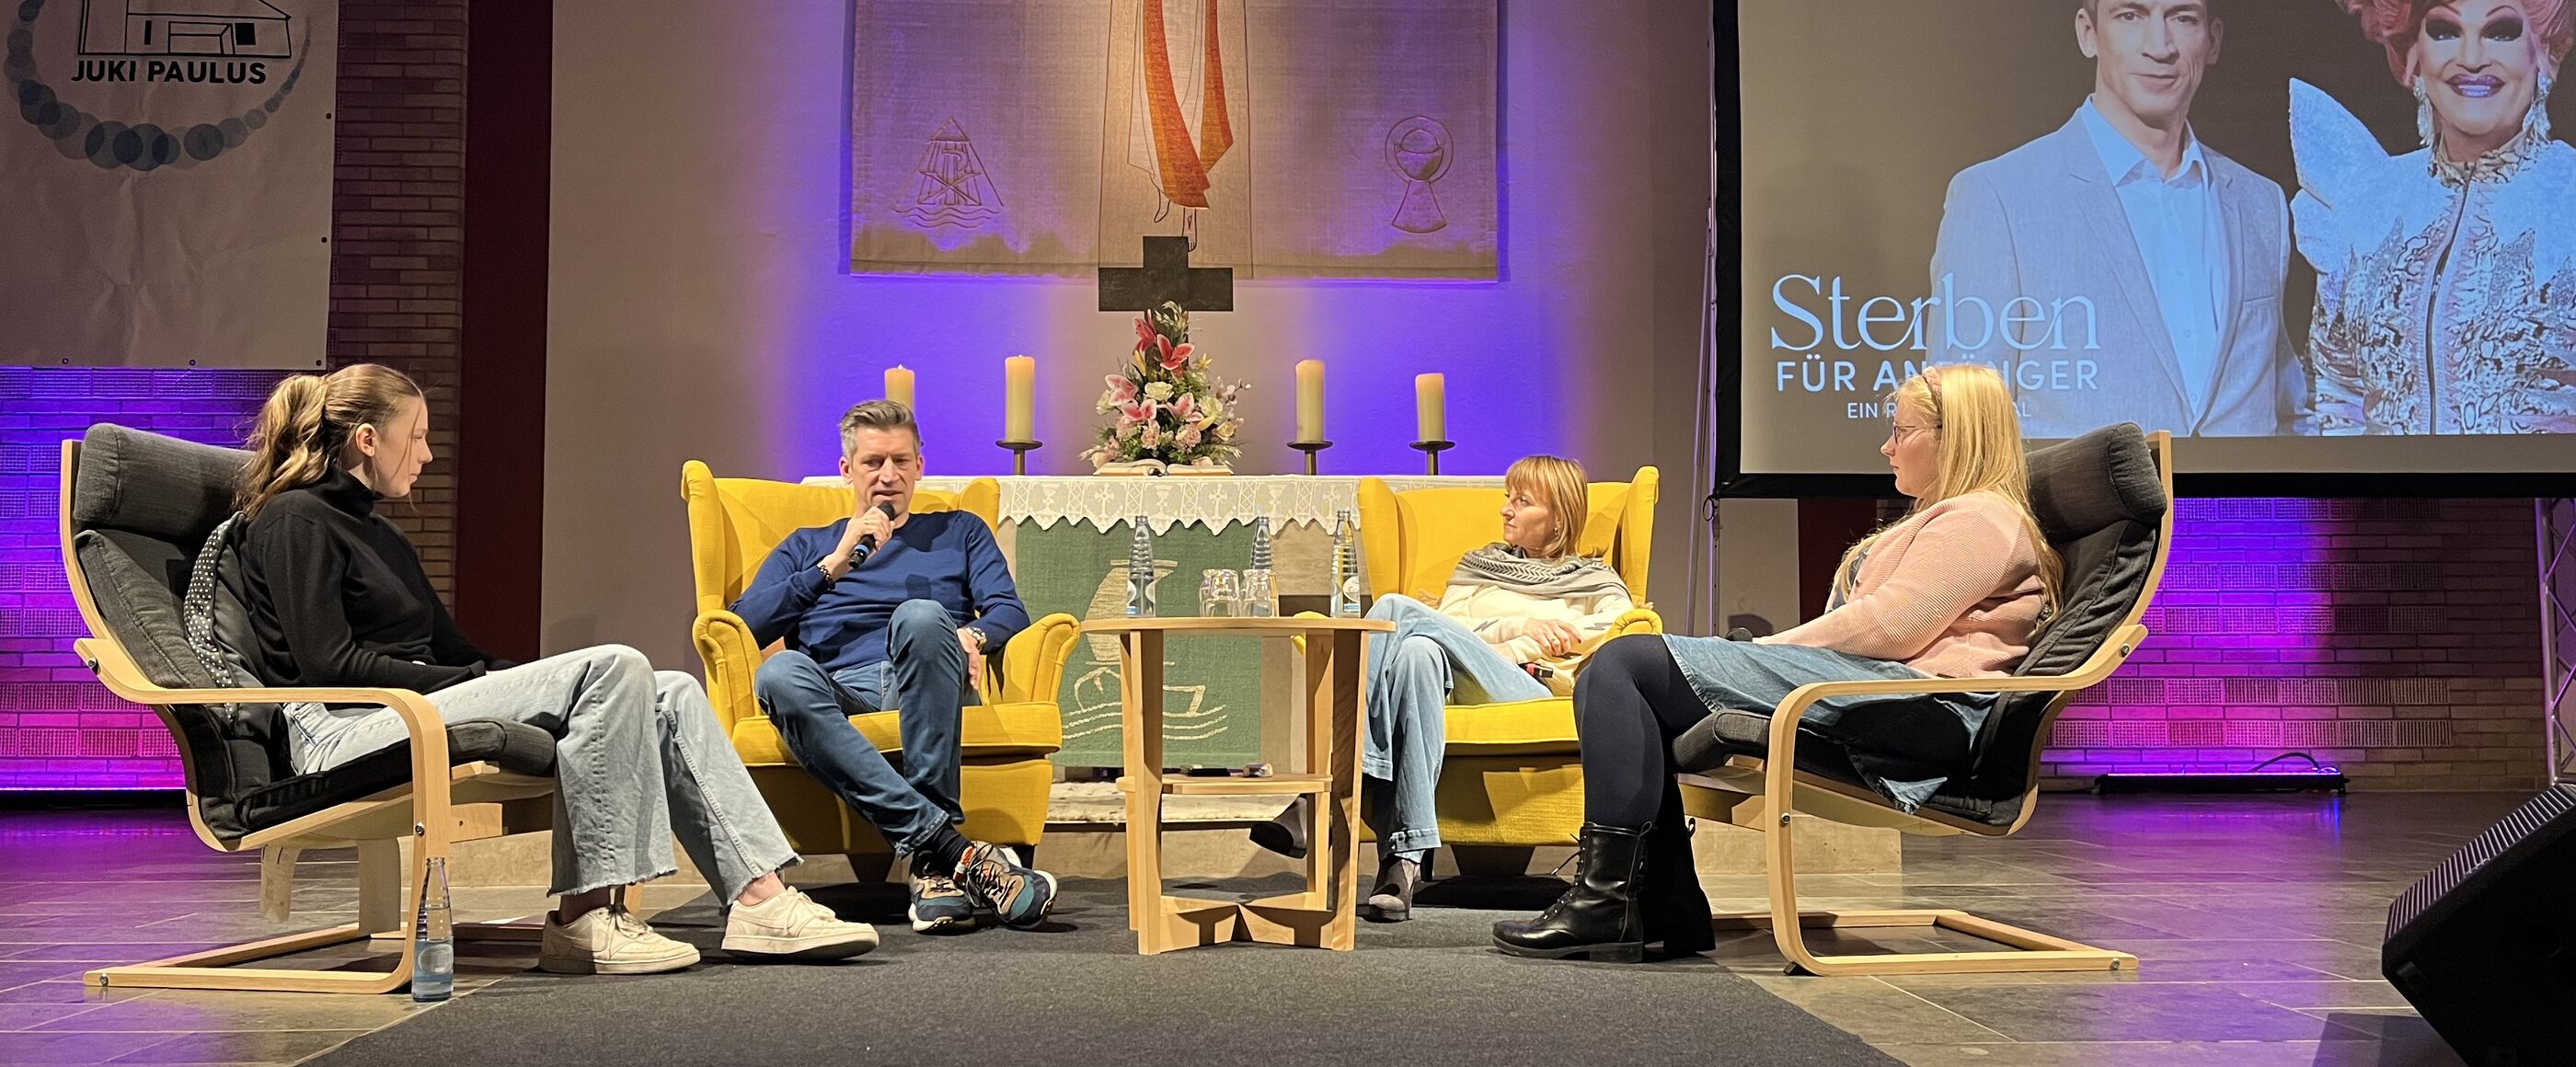 Vier Personen sitzen in Stühlen auf einer kleinen Bühne vor einem Altar. Rechts im Hintergrund ist eine Leinwand aufgebaut, auf der zwei Personen zu sehen sind: Steffen Hallaschka und Olivia Jones.